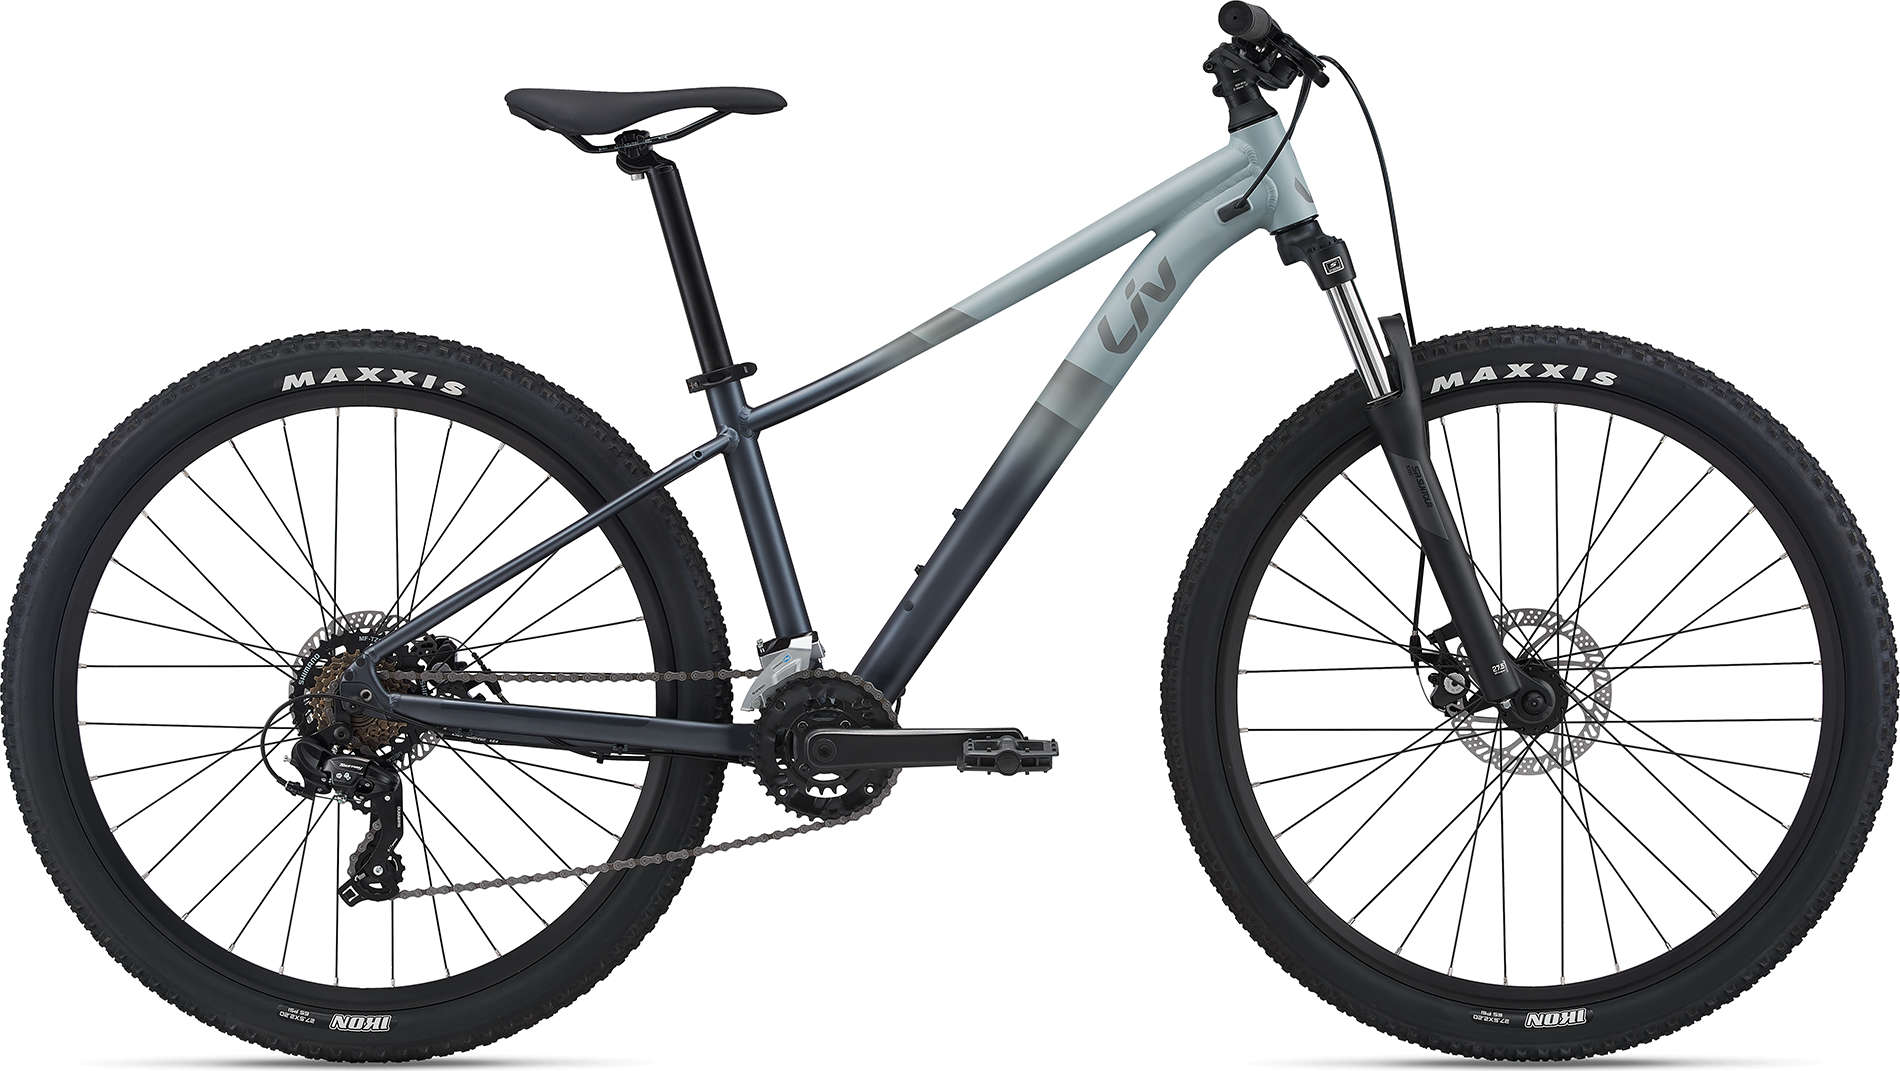 Велосипед Liv Tempt 29 4 (2021) серый (рама: M, S)